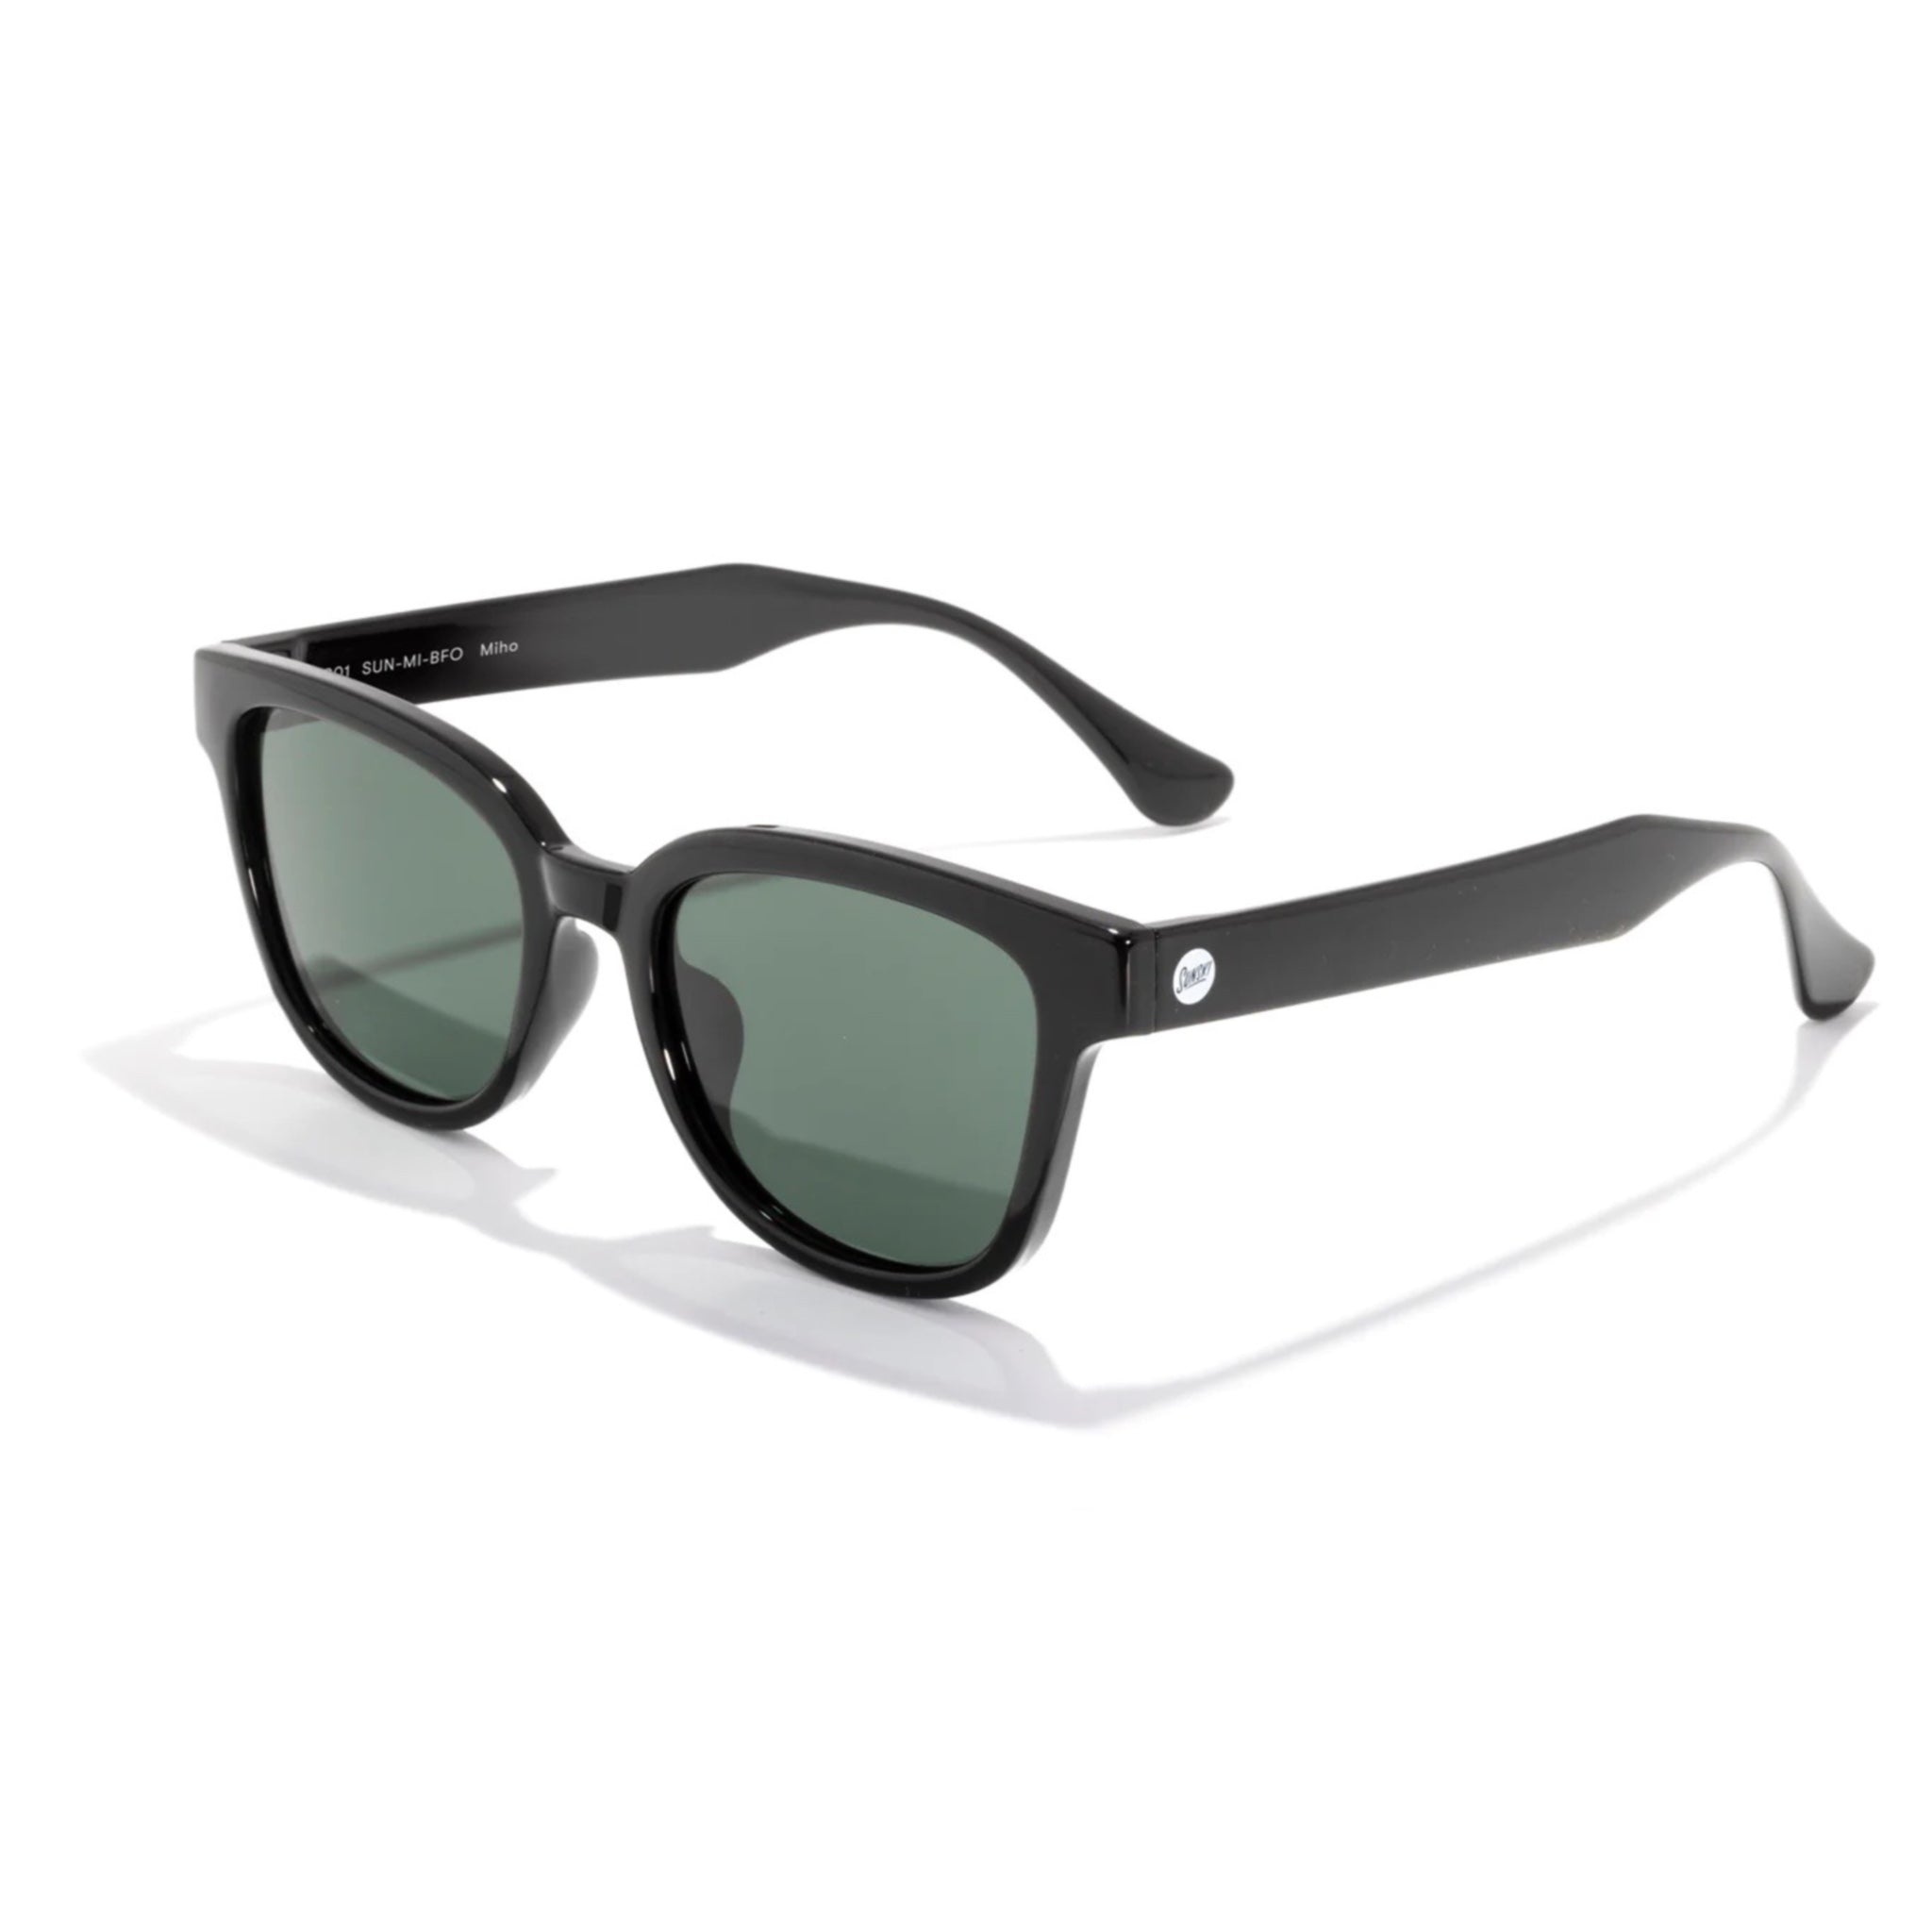 Sunski Miho Polarised Sunglasses - Black Forest